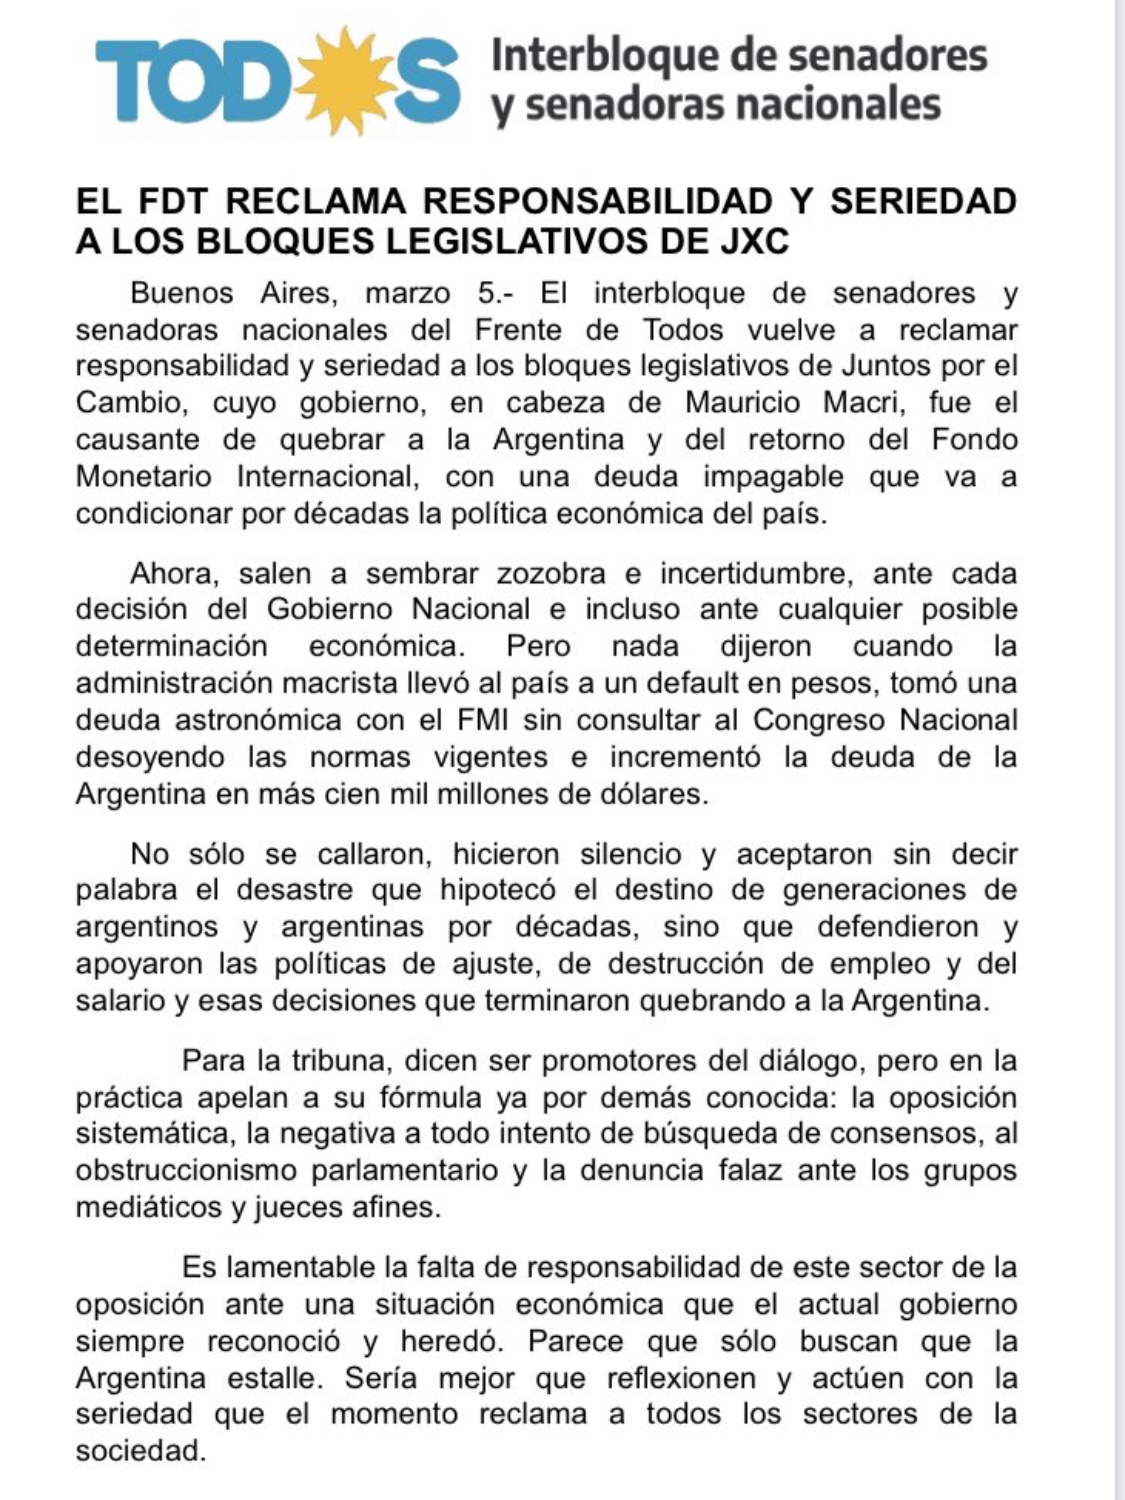 El comunicado del Frente de Todos ante las críticas de la oposición al canje de deuda.